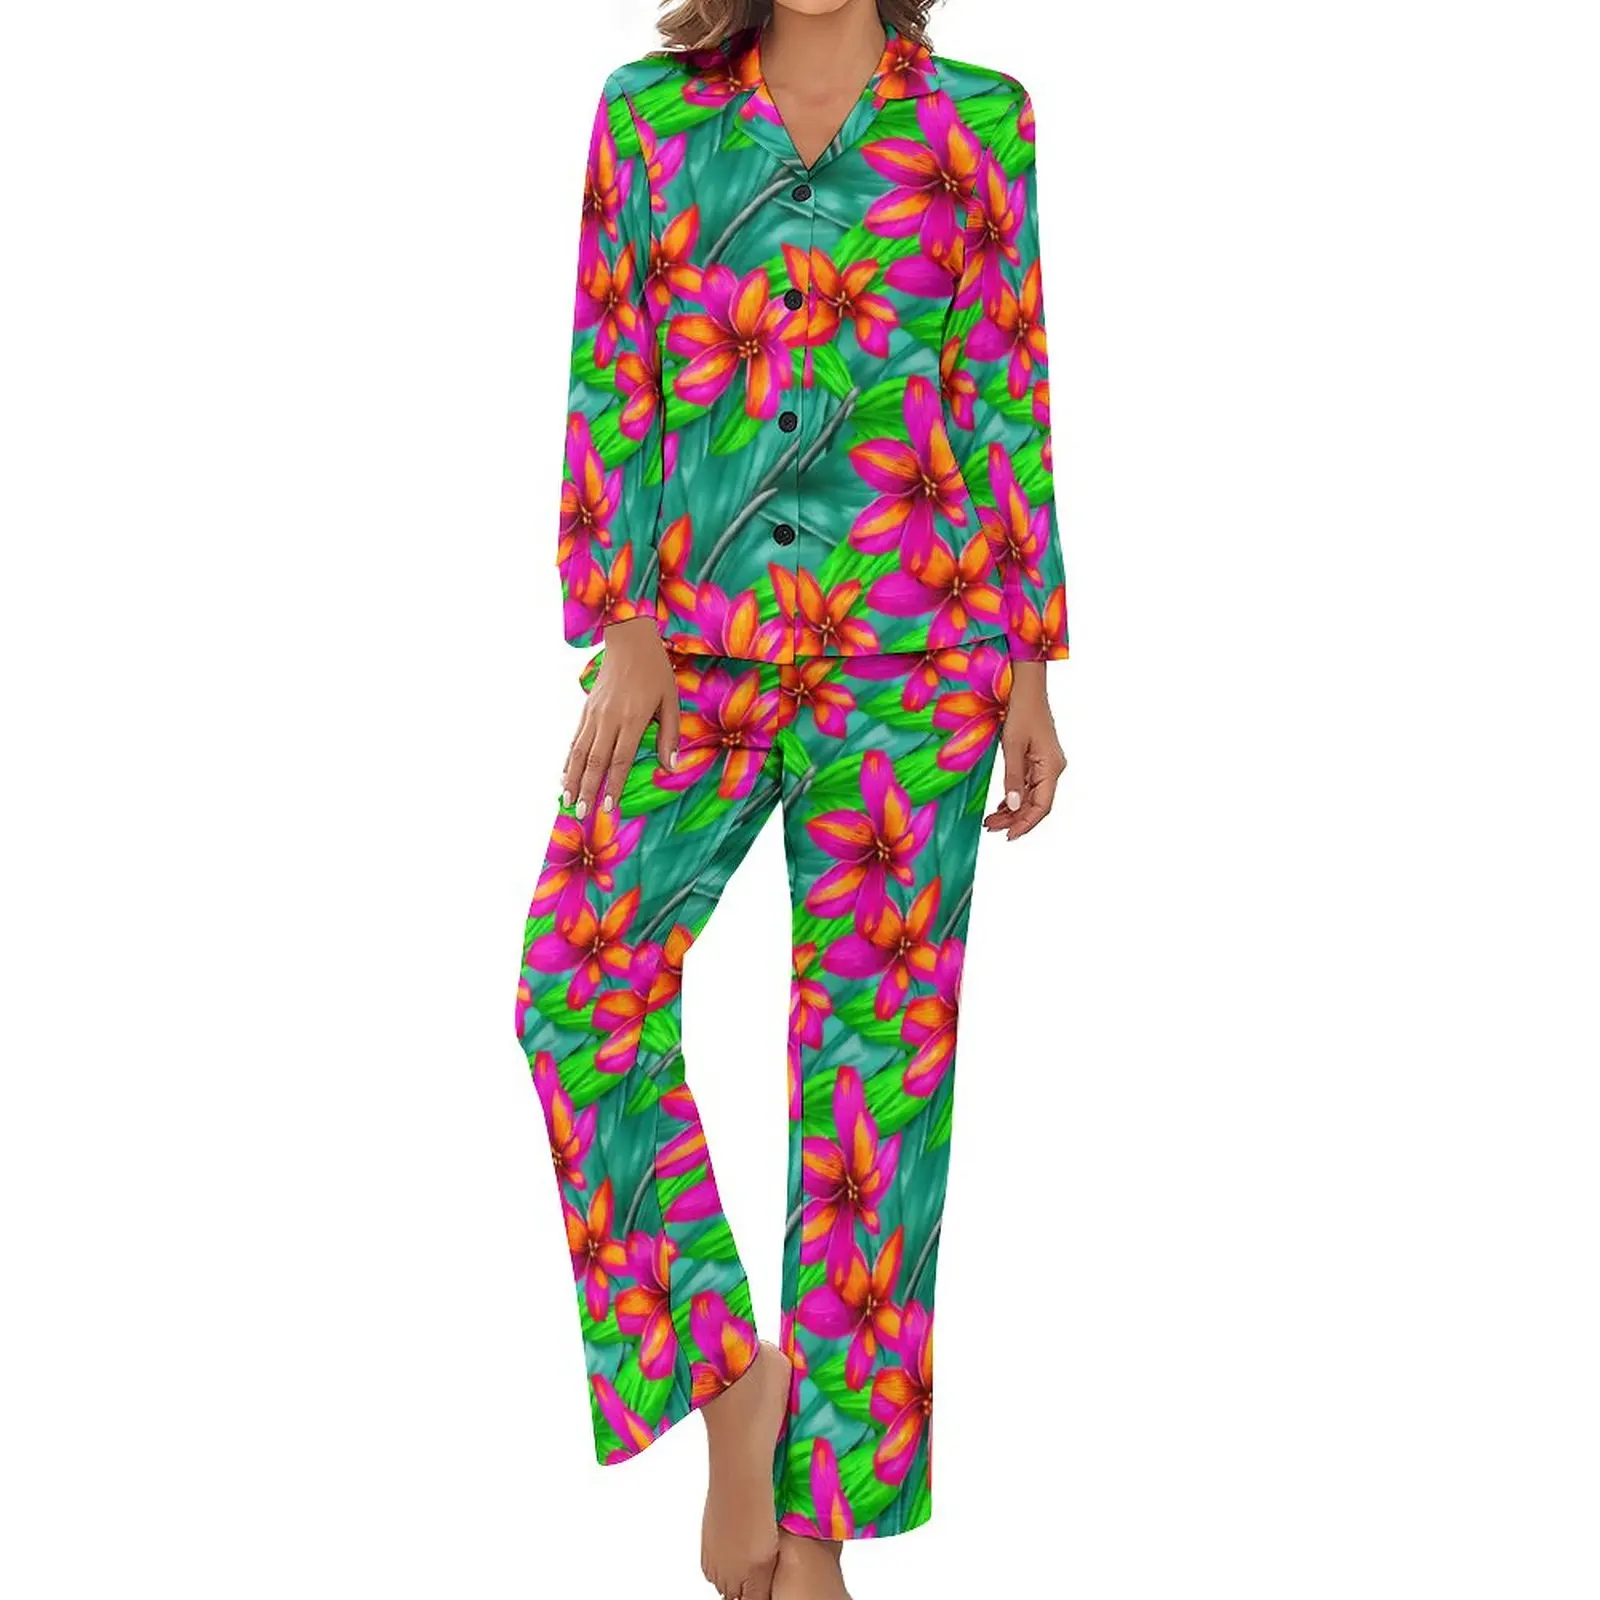 

Пижама с тропическим цветочным принтом Райский принт теплые пижамные комплекты с длинным рукавом 2 предмета Повседневная осенняя одежда для сна на заказ подарок на день рождения